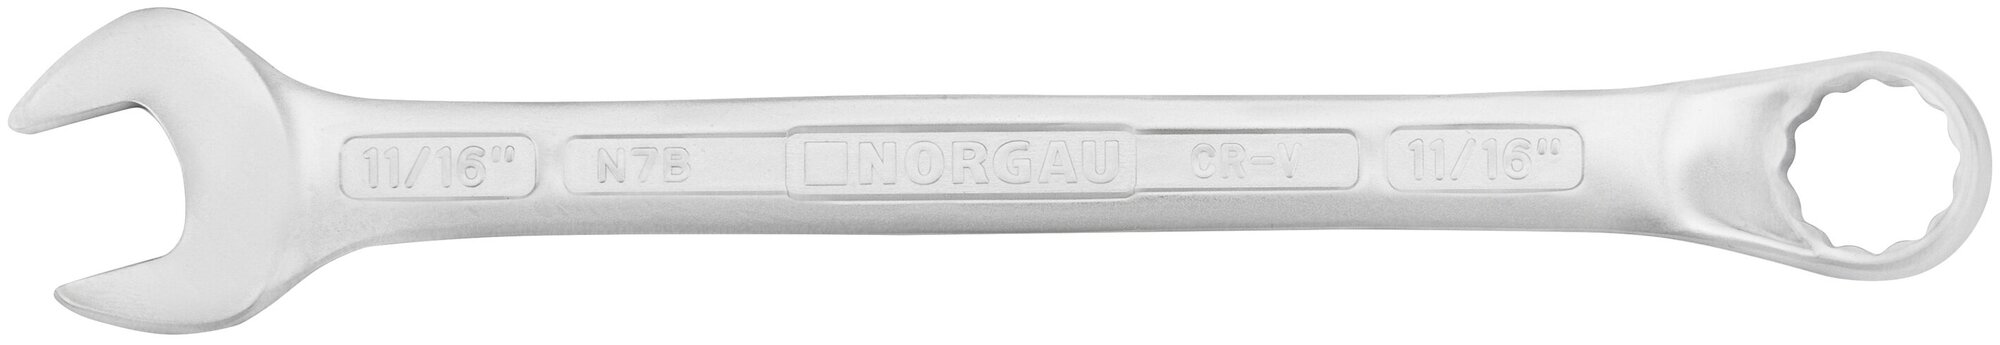 Ключ гаечный 11/16" NORGAU Industrial, "HРM" High precision machining 220 мм, рожковый и накидной профиль.